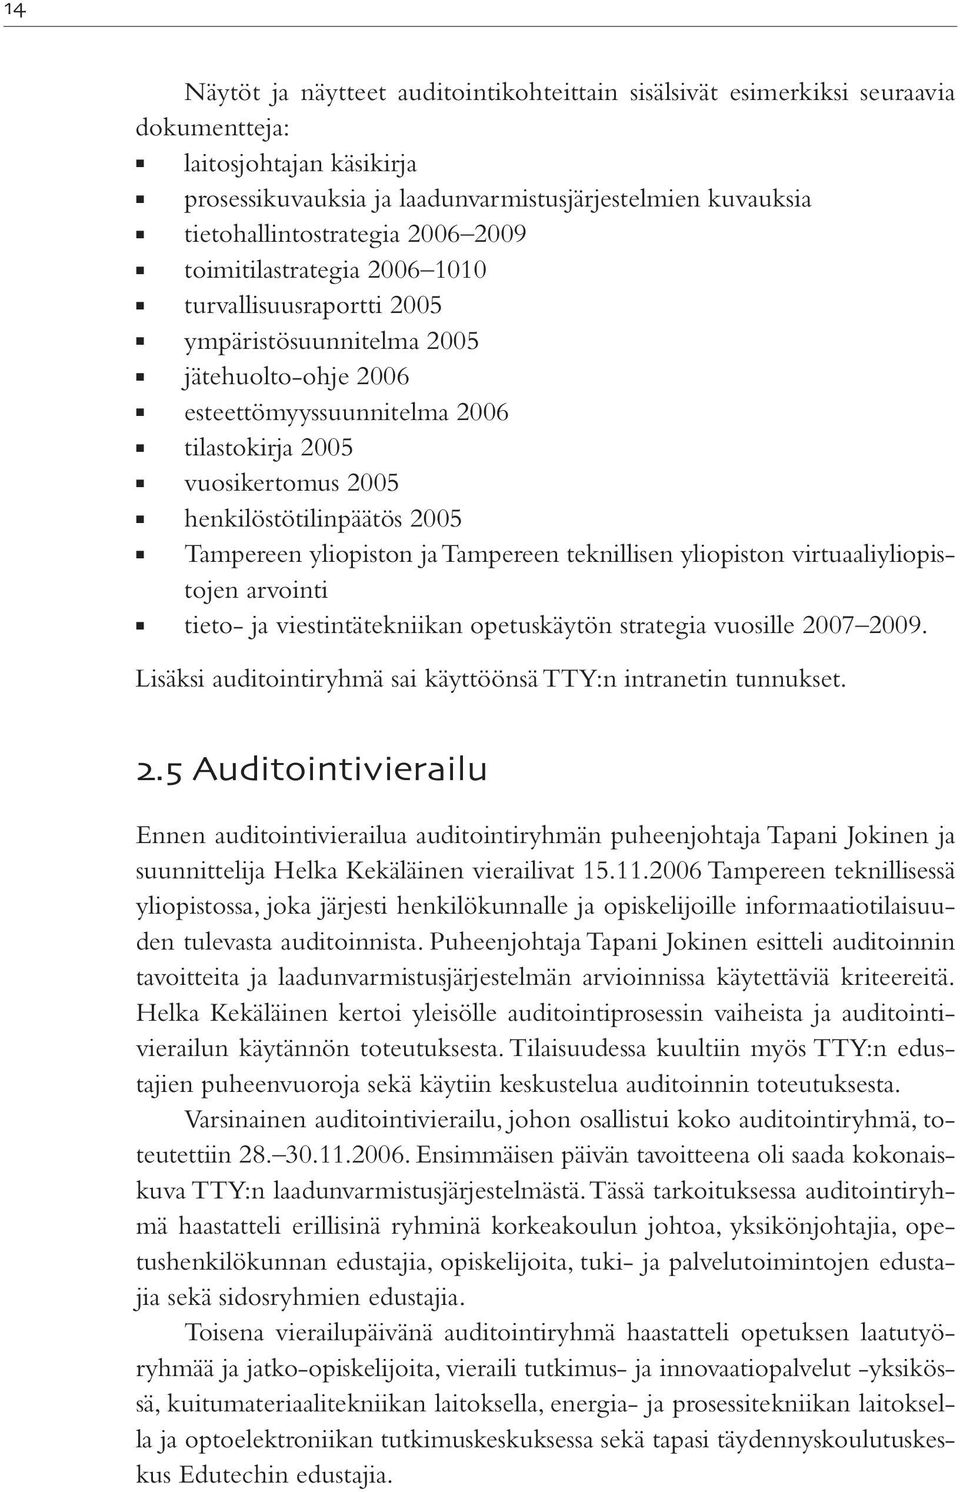 2005 Tampereen yliopiston ja Tampereen teknillisen yliopiston virtuaaliyliopistojen arvointi tieto- ja viestintätekniikan opetuskäytön strategia vuosille 2007 2009.